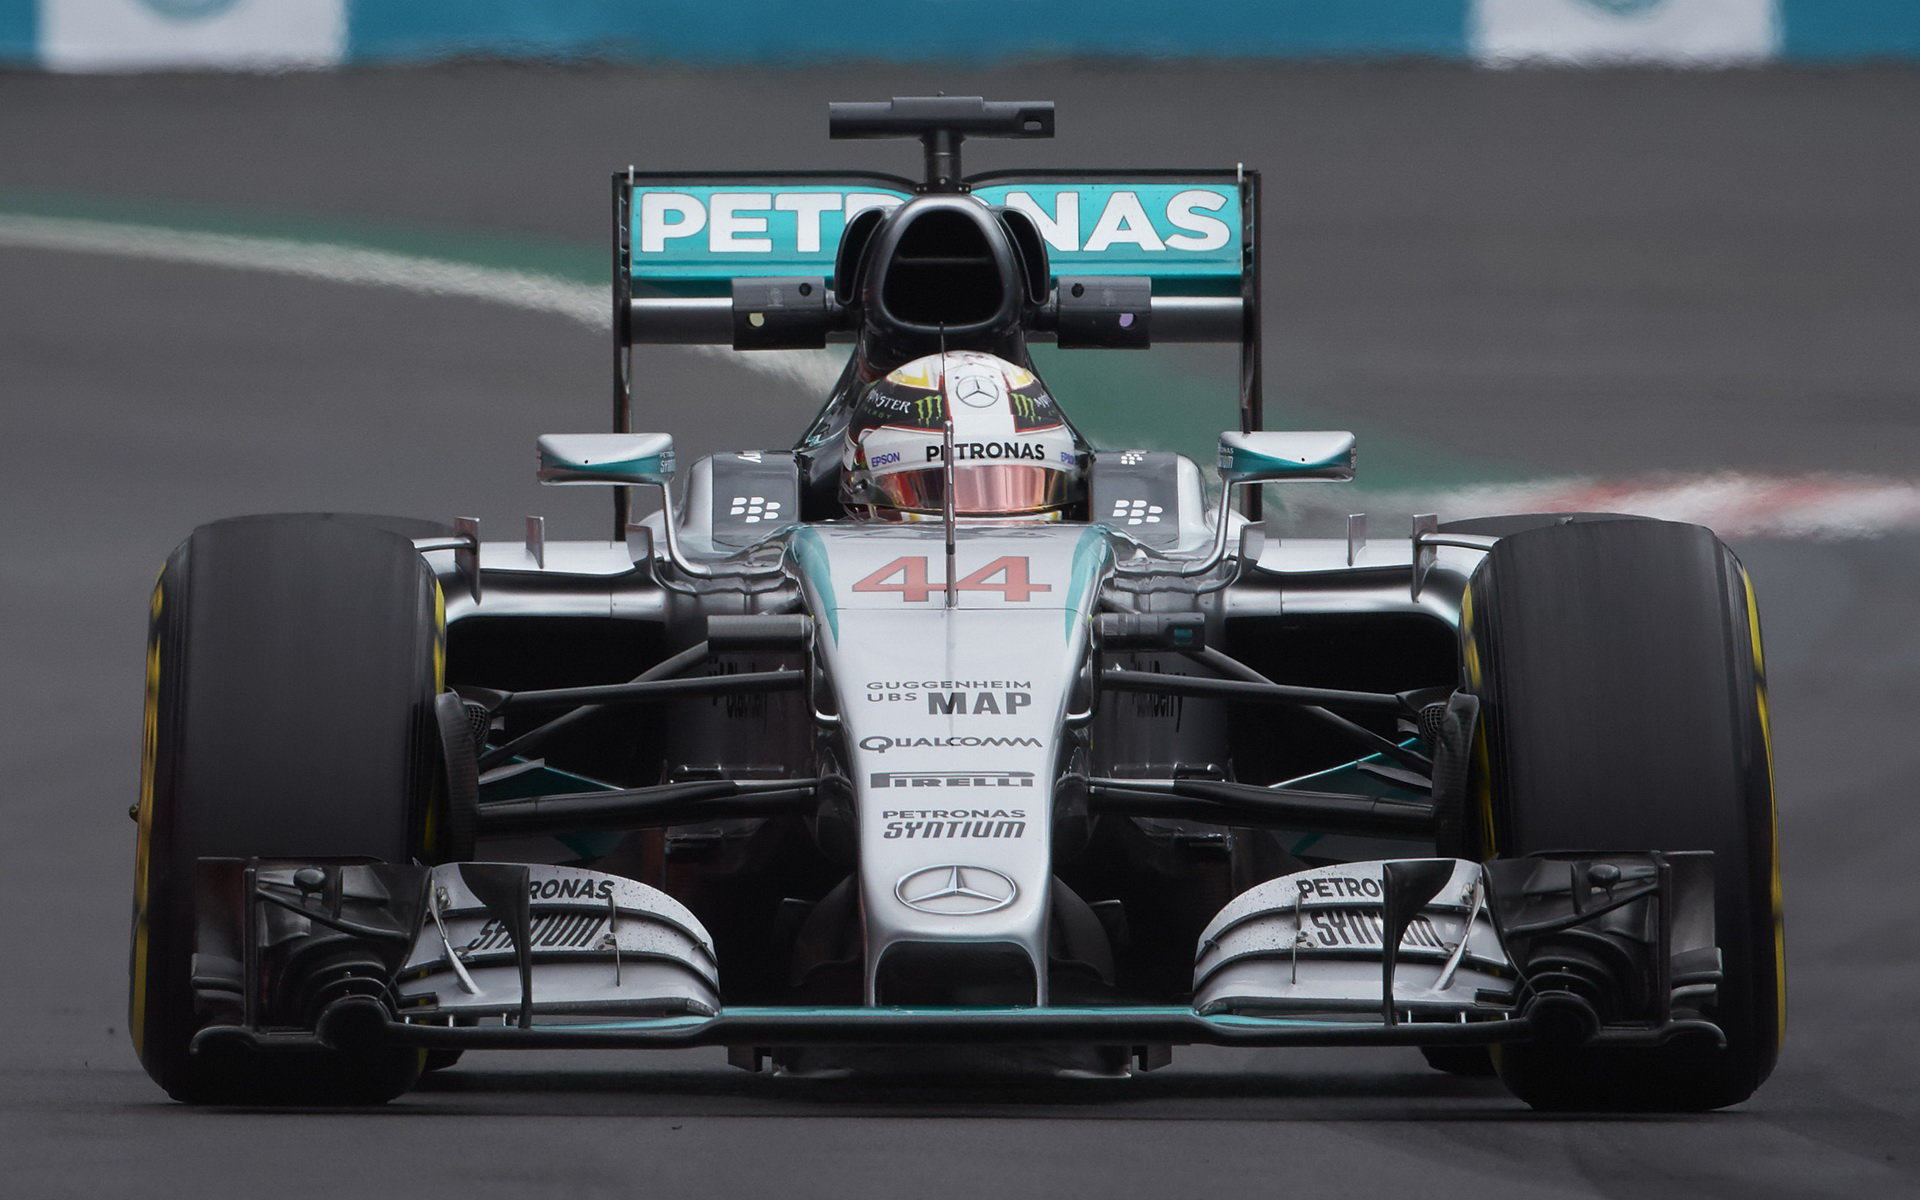 Lewis Hamilton v Mexiku